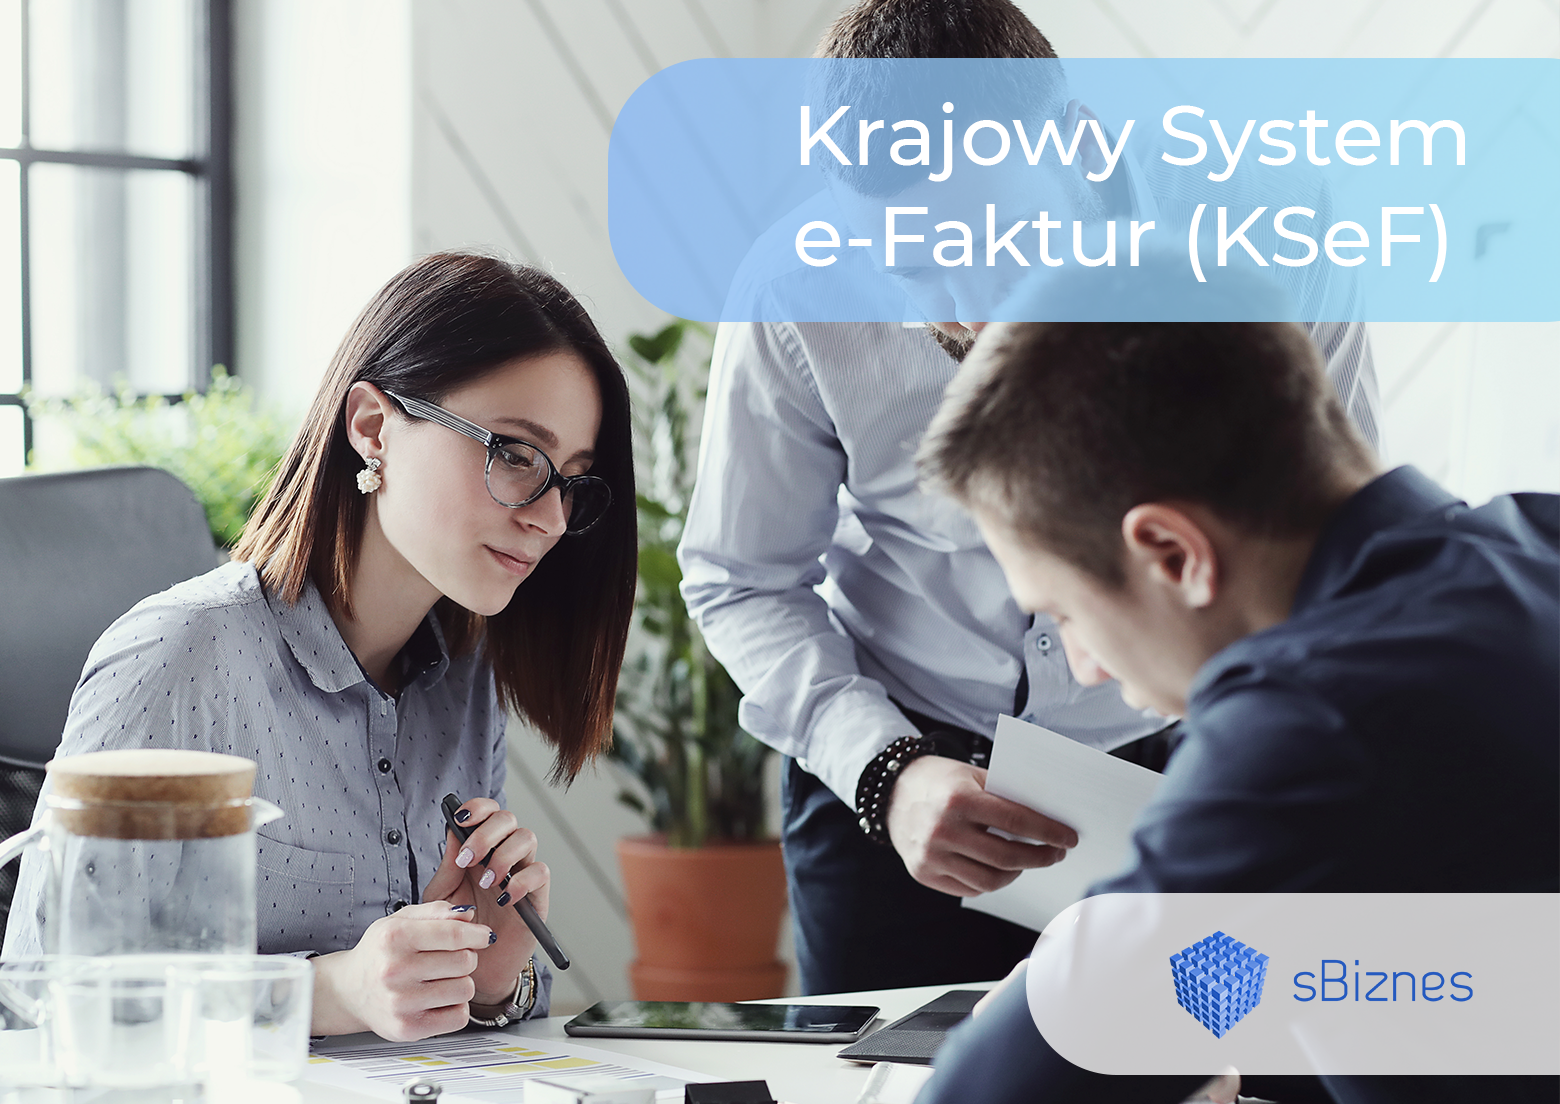 KSeF - Krajowy System elektronicznych Faktur